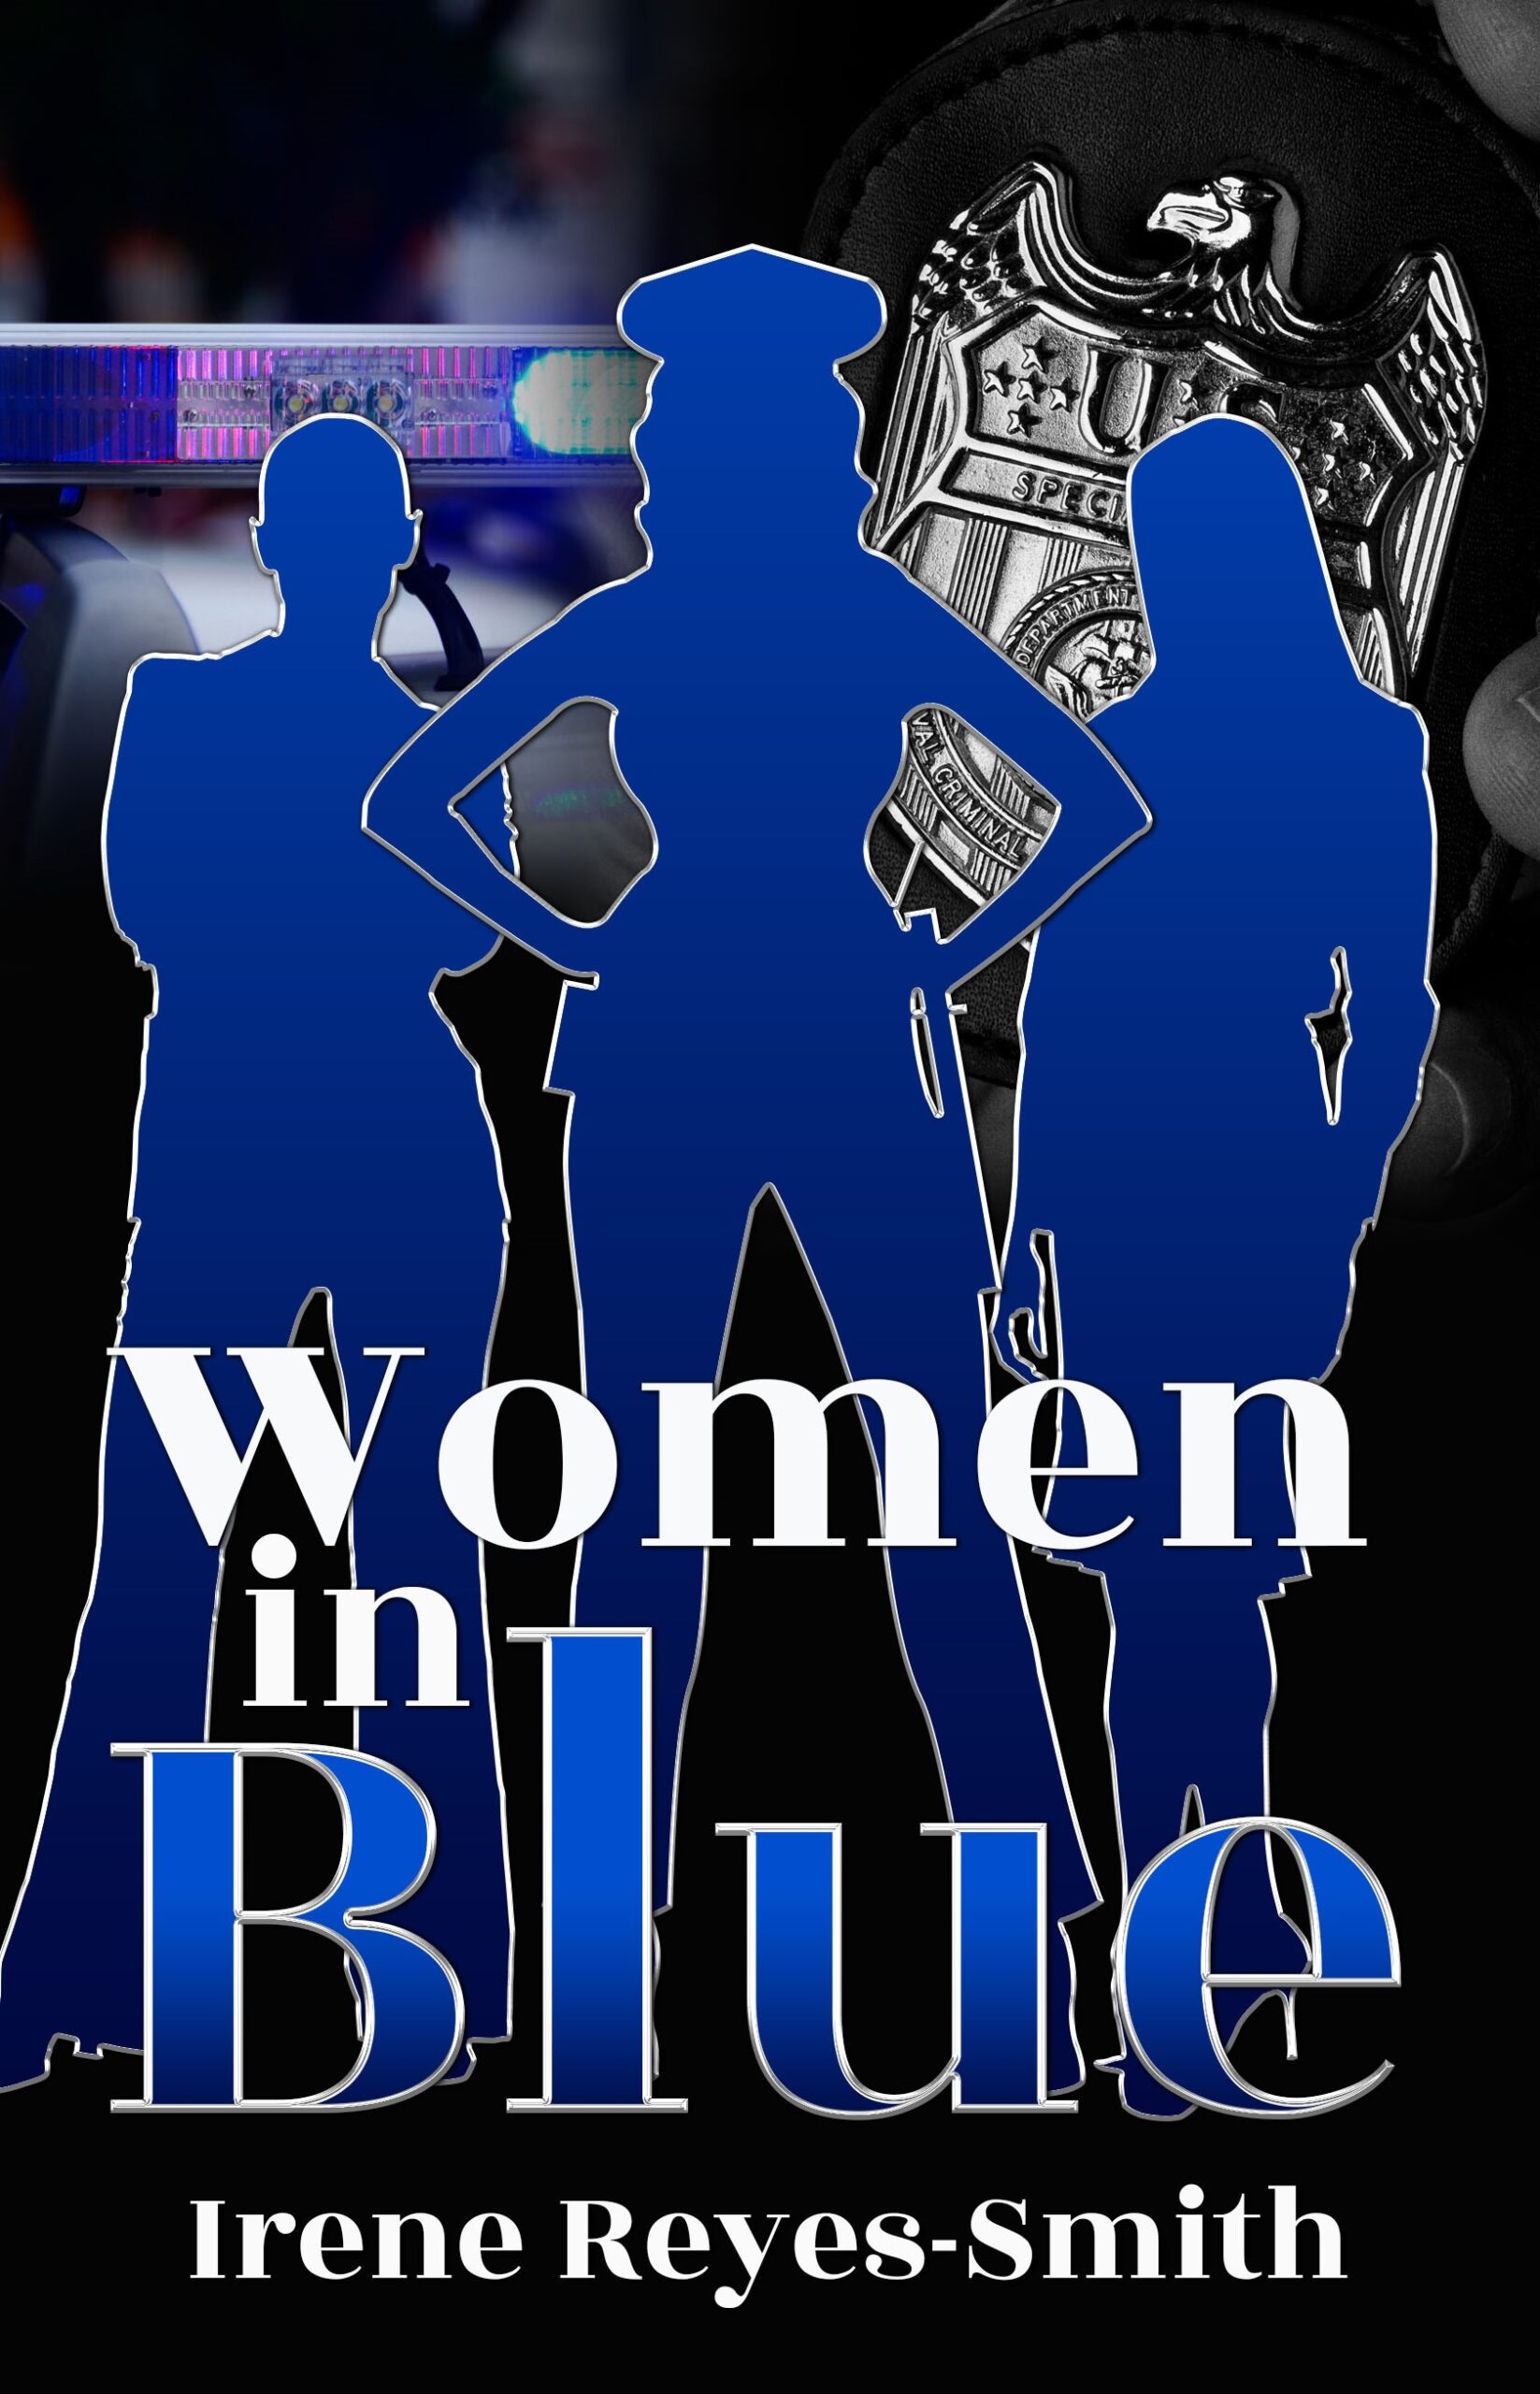 Women In Blue